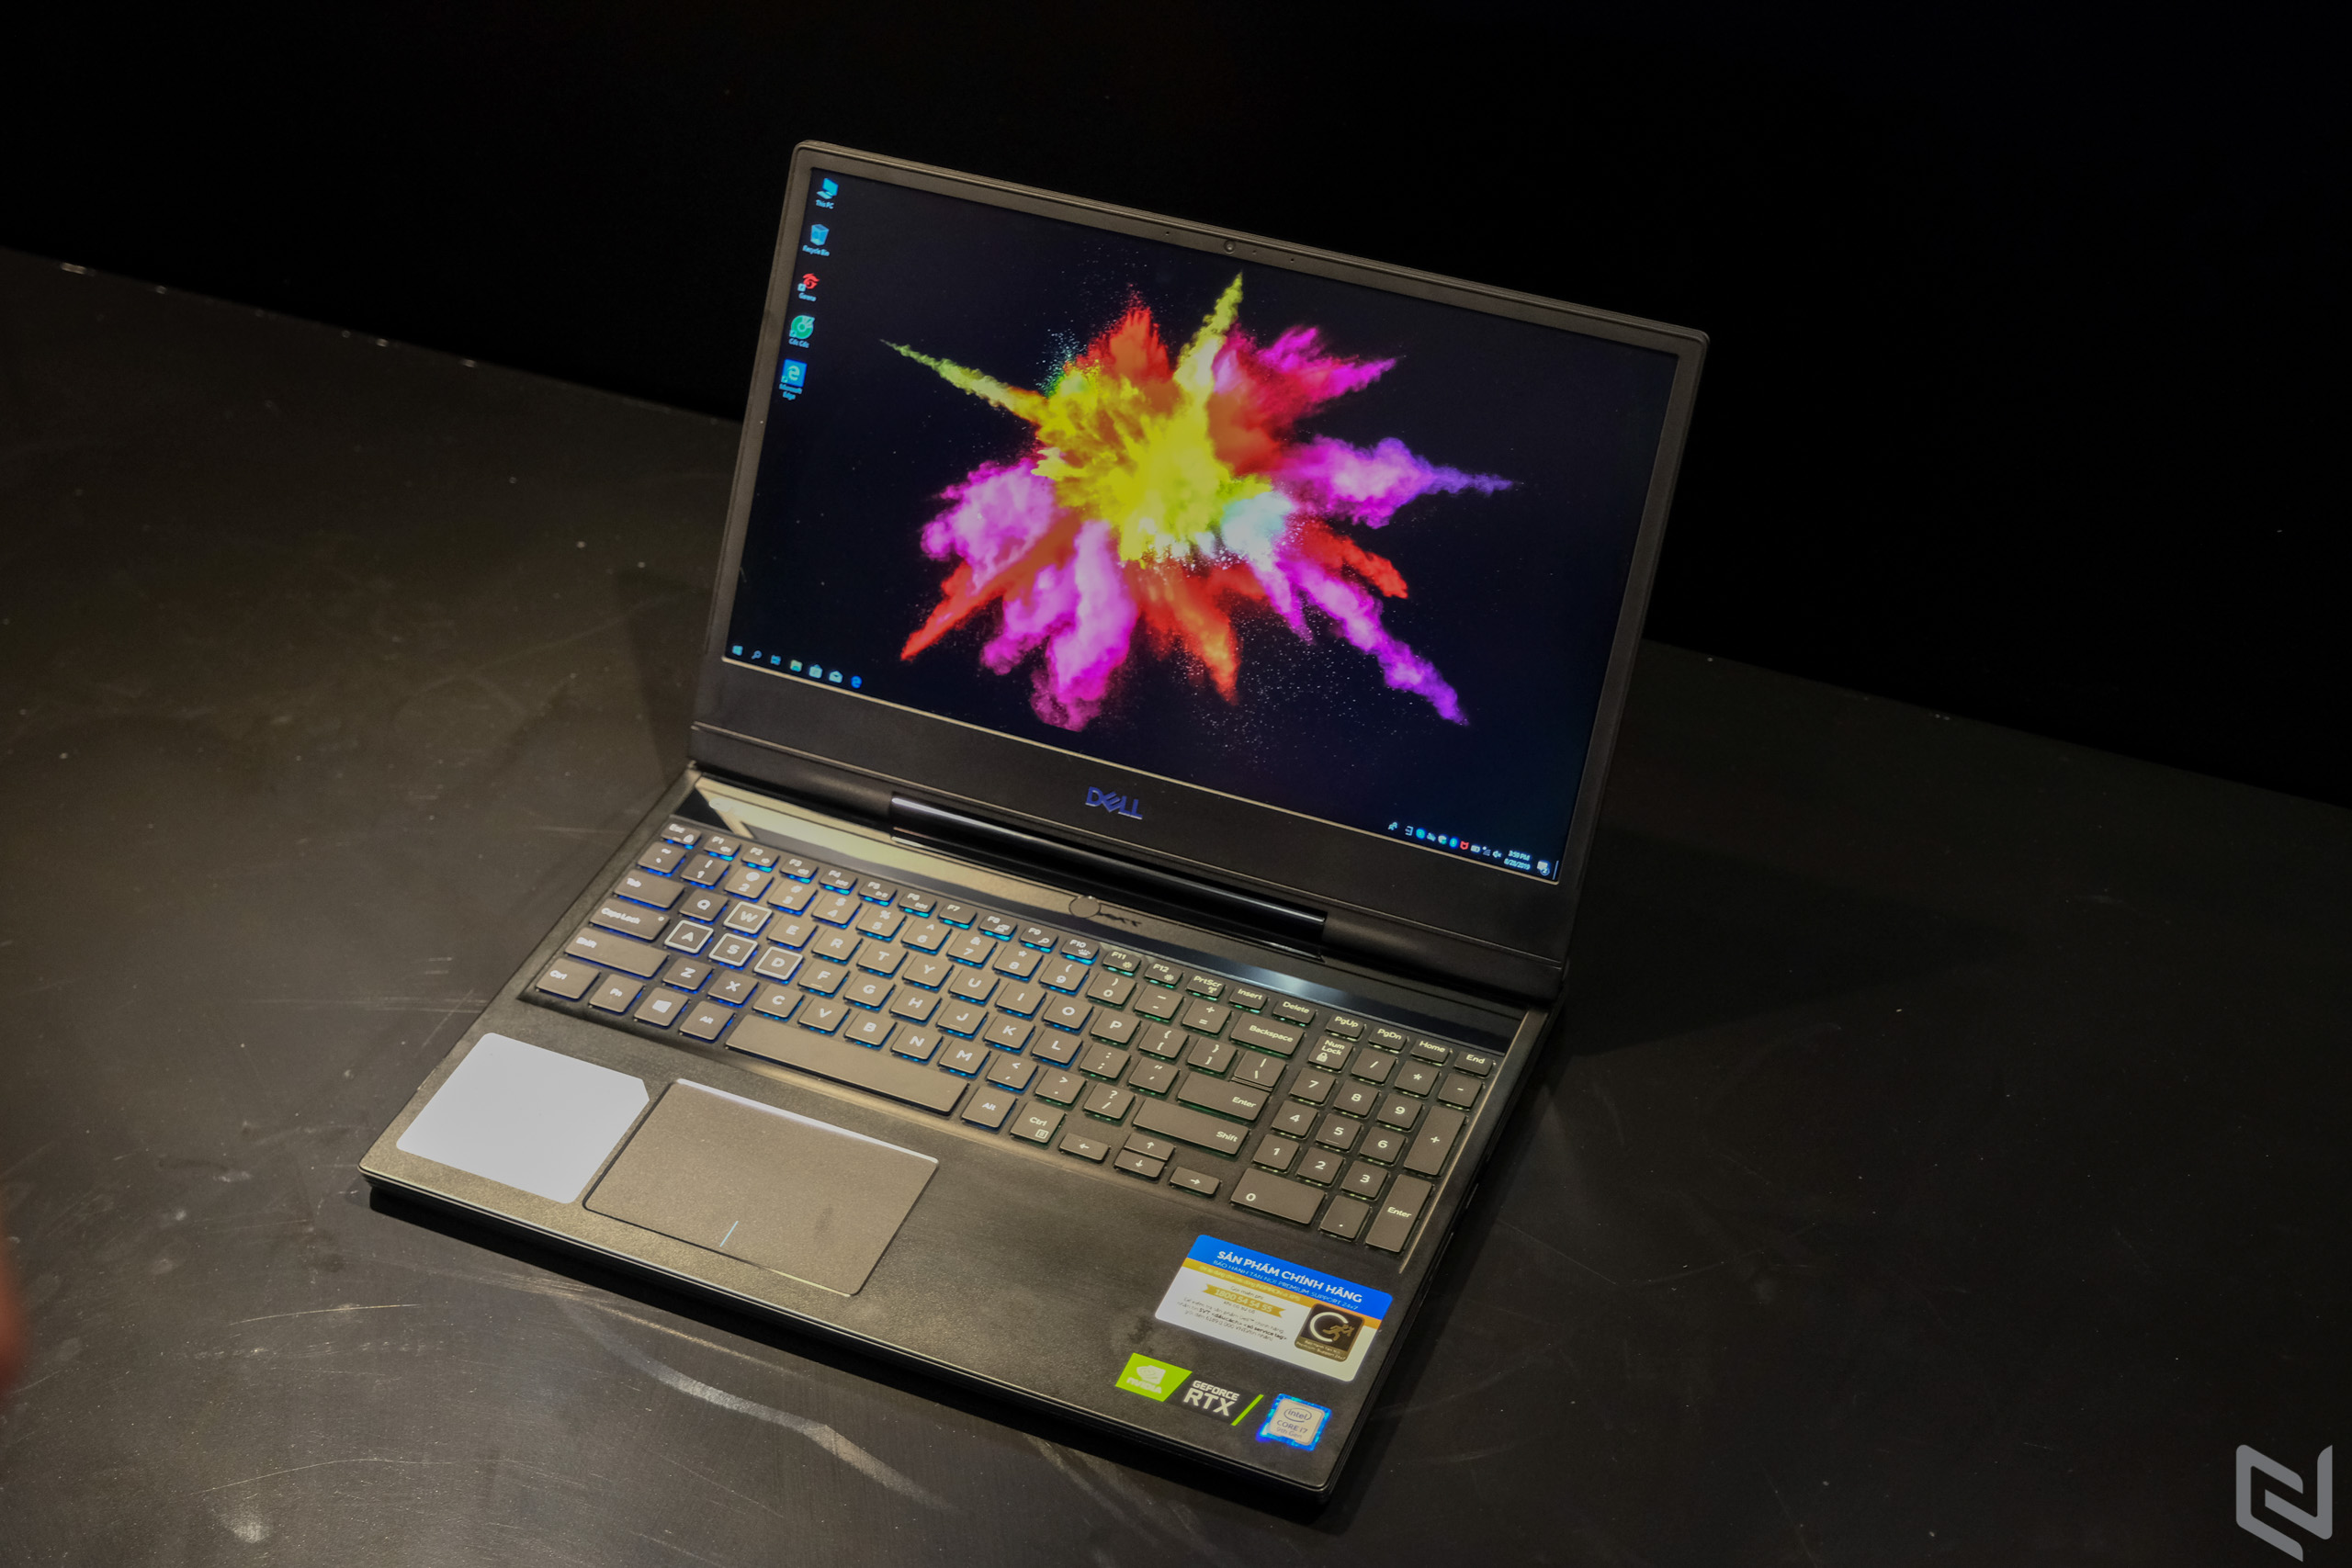 Dell làm mới dòng laptop gaming G-series 2019 mang đến trải nghiệm mượt mà hơn